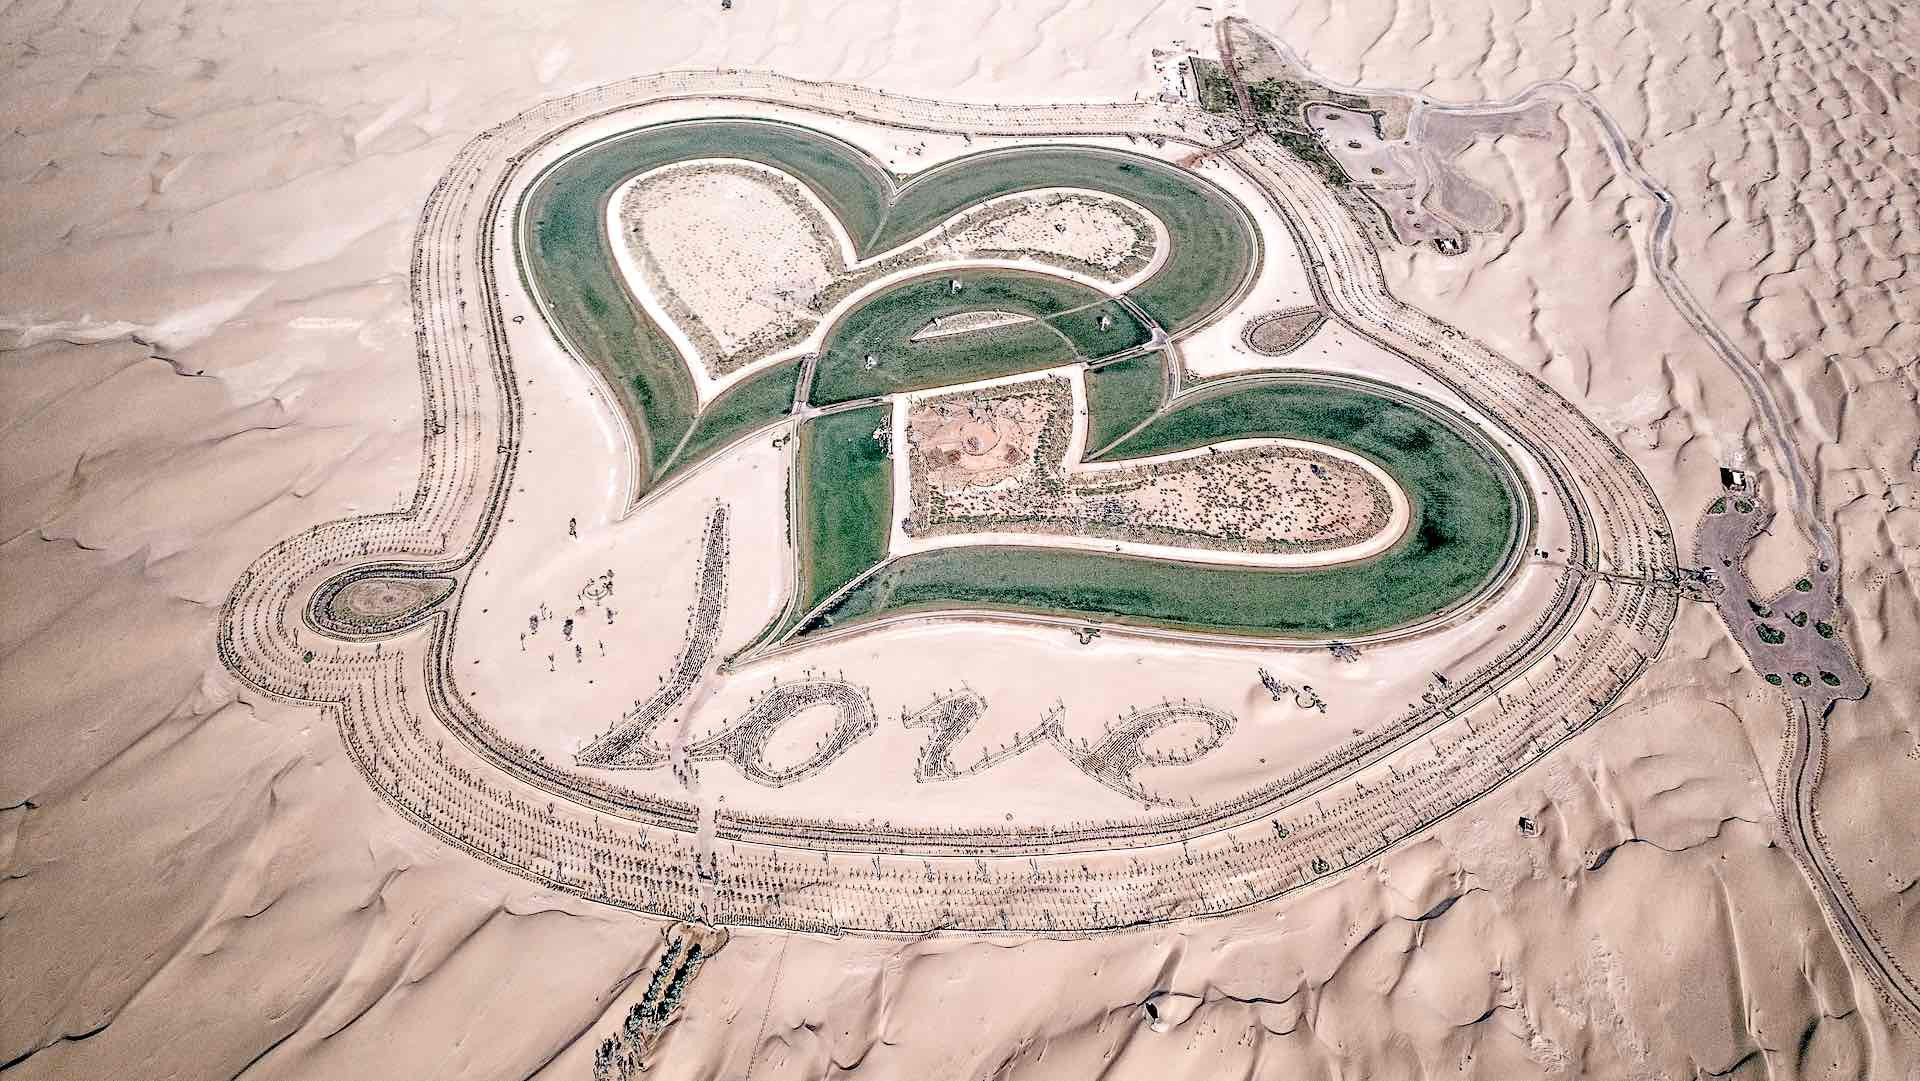 Hồ tình yêu hình trái tim khổng lồ nổi bật giữa sa mạc Dubai